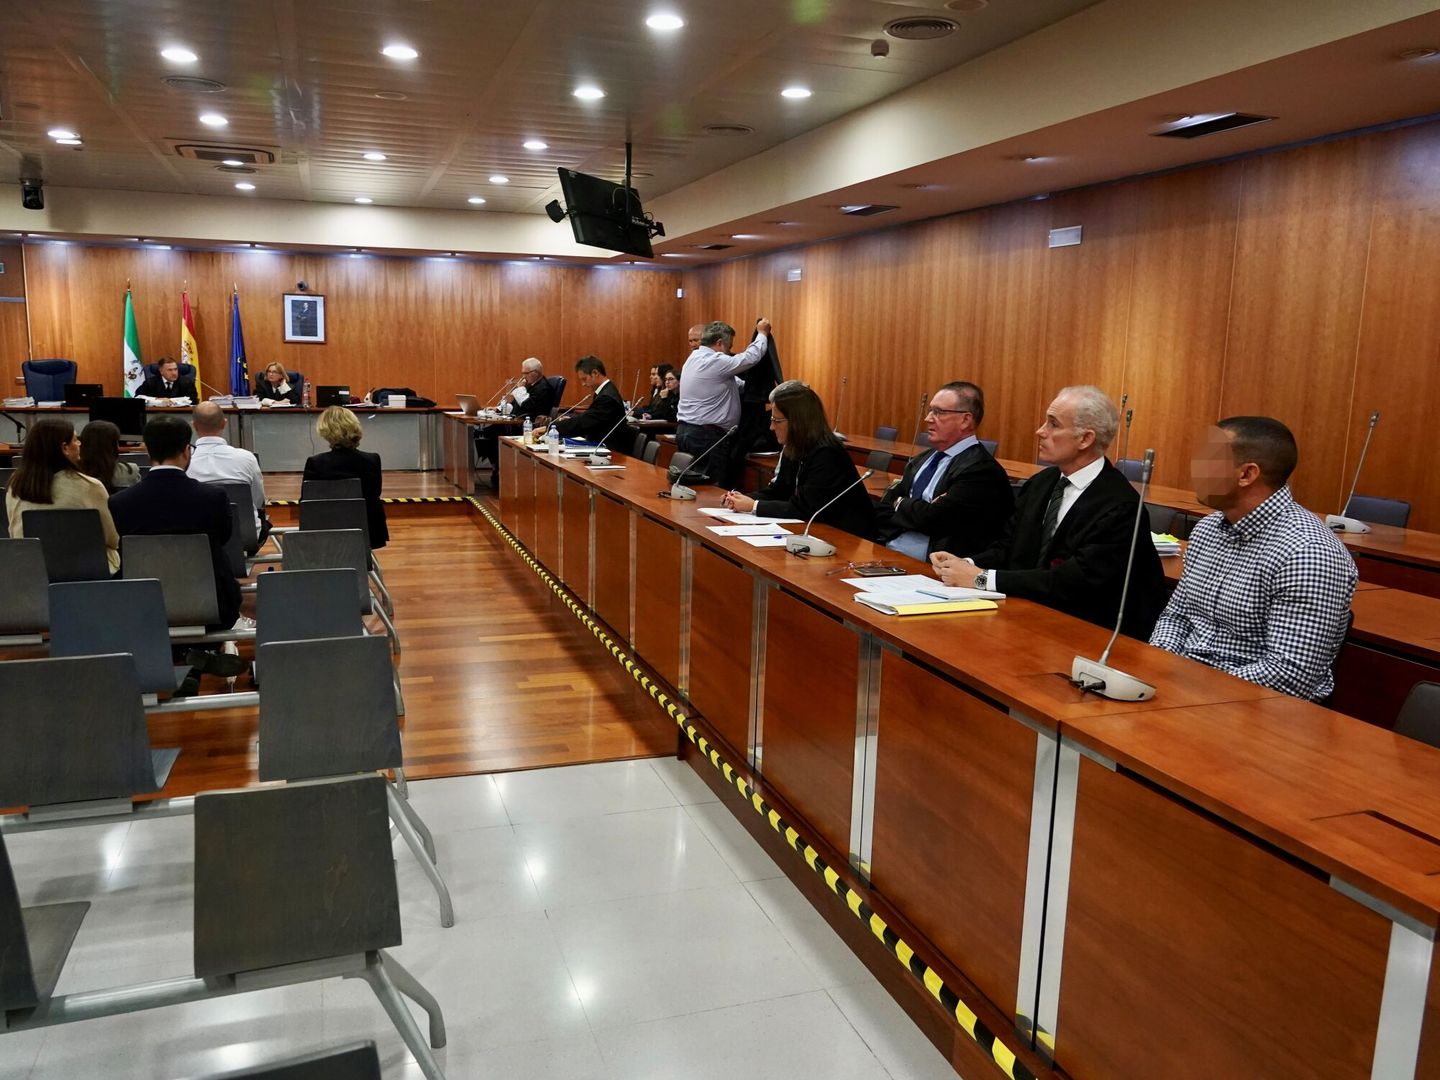 Imágenes de la sala durante el juicio. (Europa Press/Álex Zea)